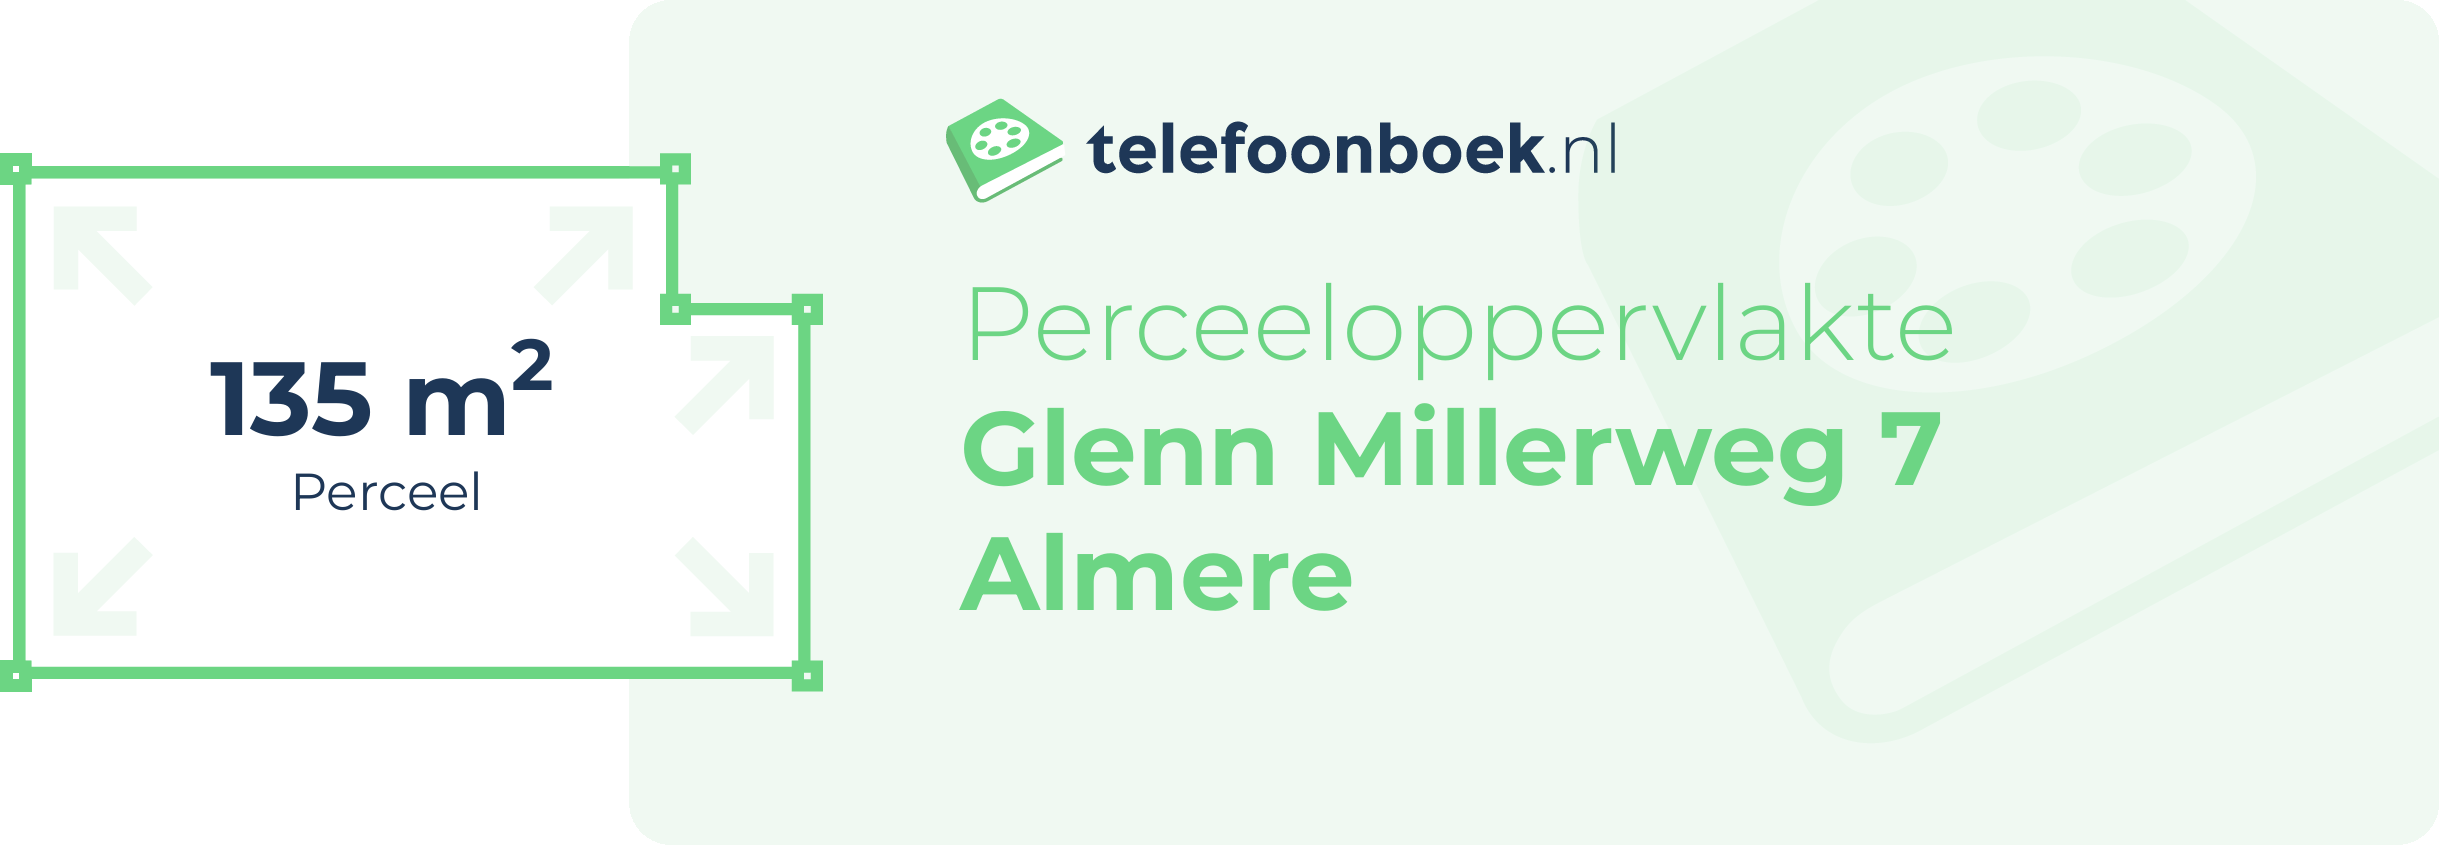 Perceeloppervlakte Glenn Millerweg 7 Almere